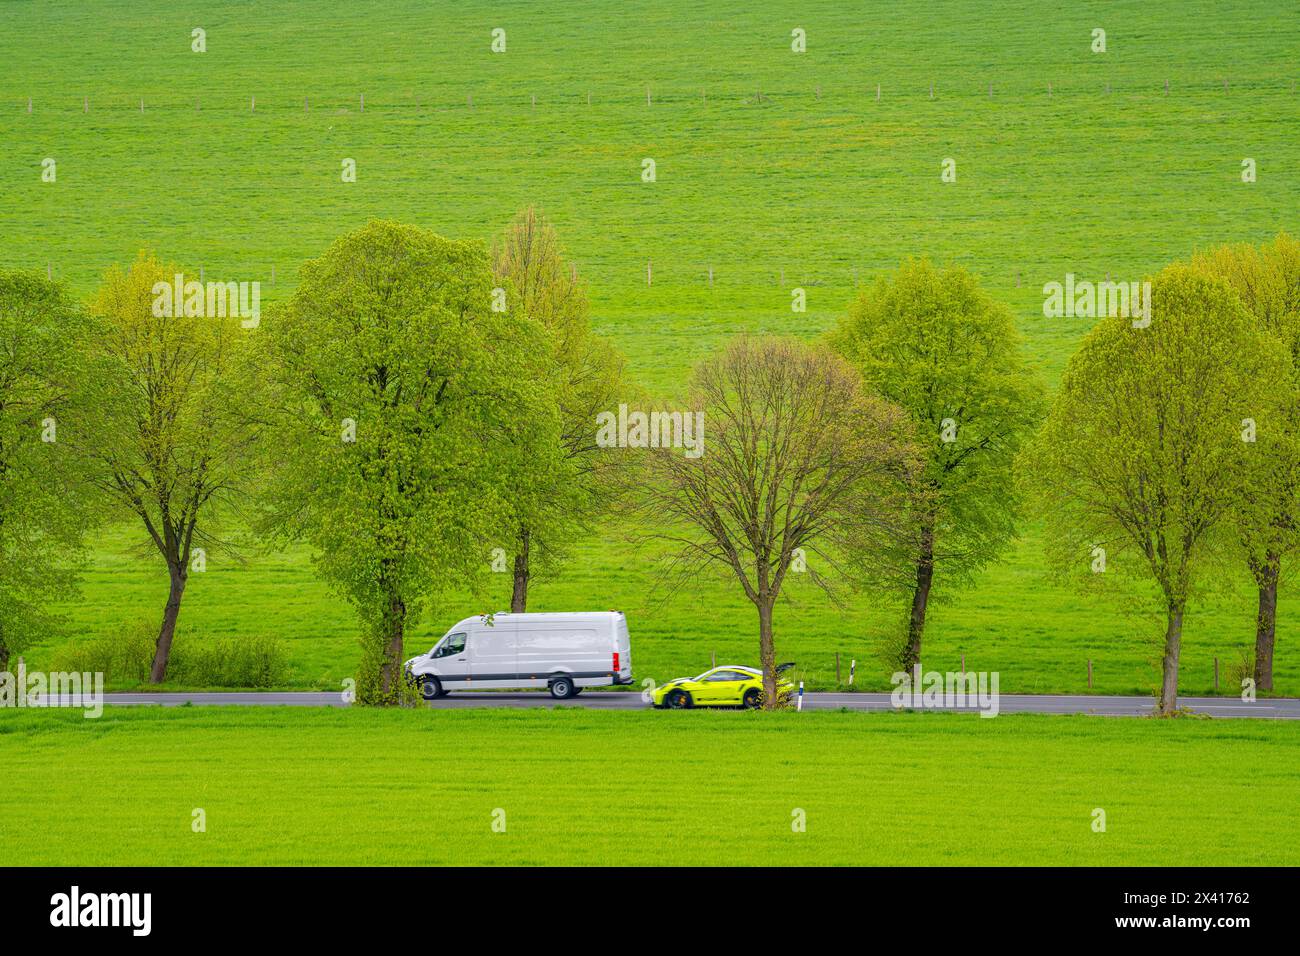 Auto auf einer Landstraße, Überholmanöver, grüne Felder, Wiesen, Bäume säumen die zweispurige Straße, Frühling, bei Schwelm, NRW, Deutschland, Stockfoto